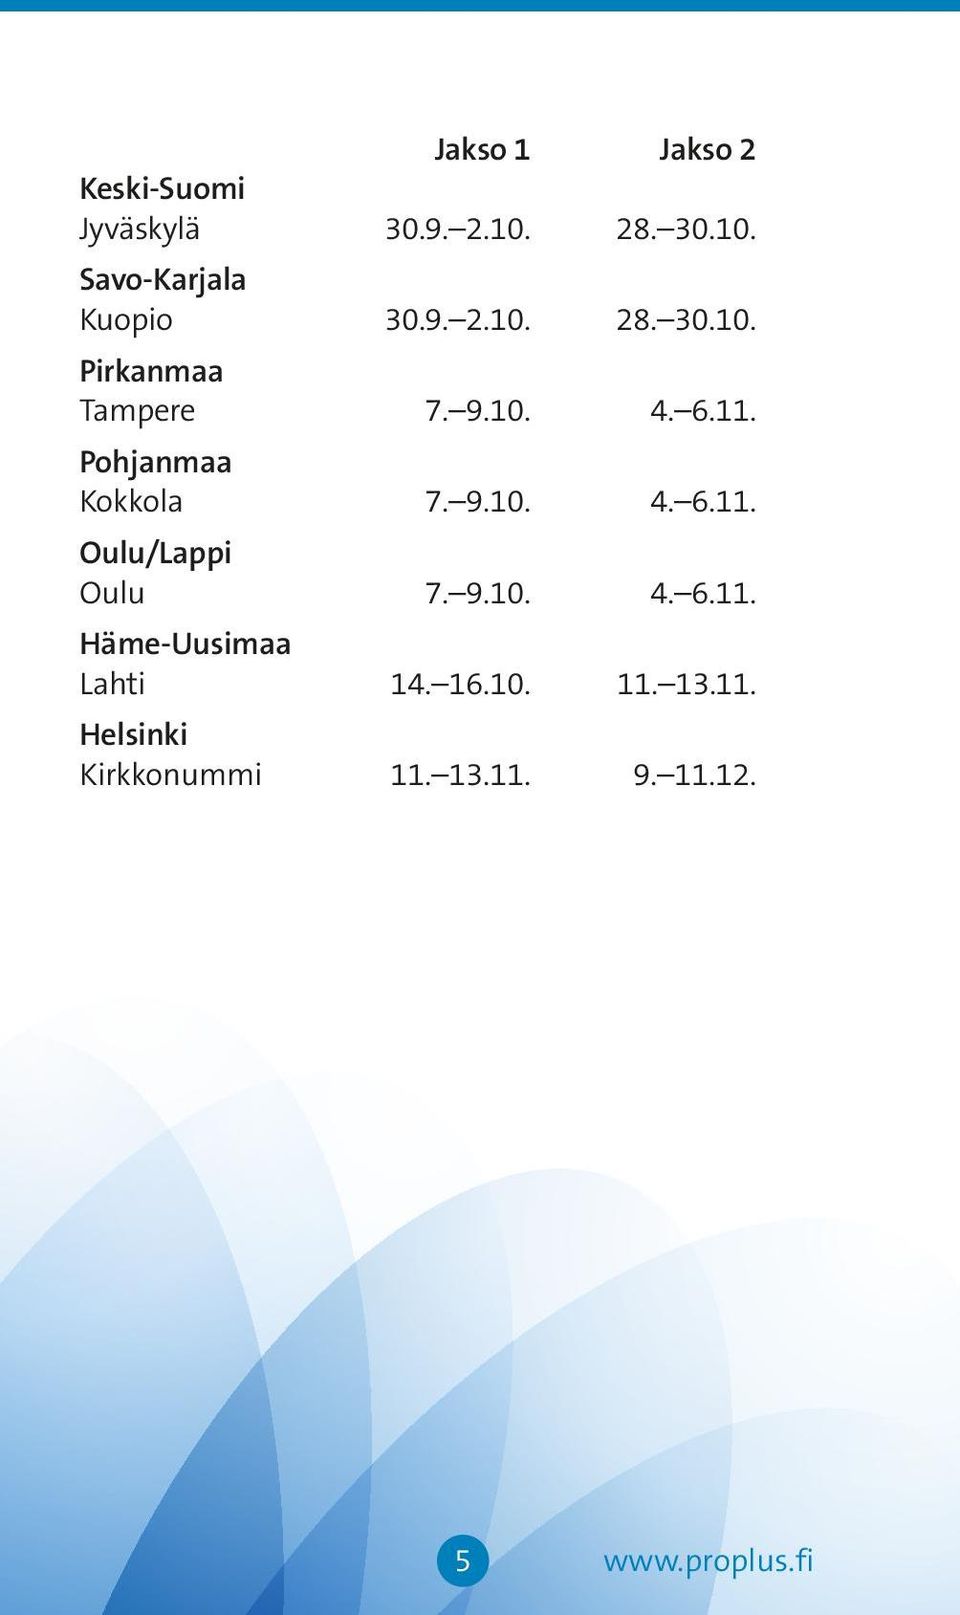 9.10. 4. 6.11. Oulu/Lappi Oulu 7. 9.10. 4. 6.11. Häme-Uusimaa Lahti 14. 16.10. 11.